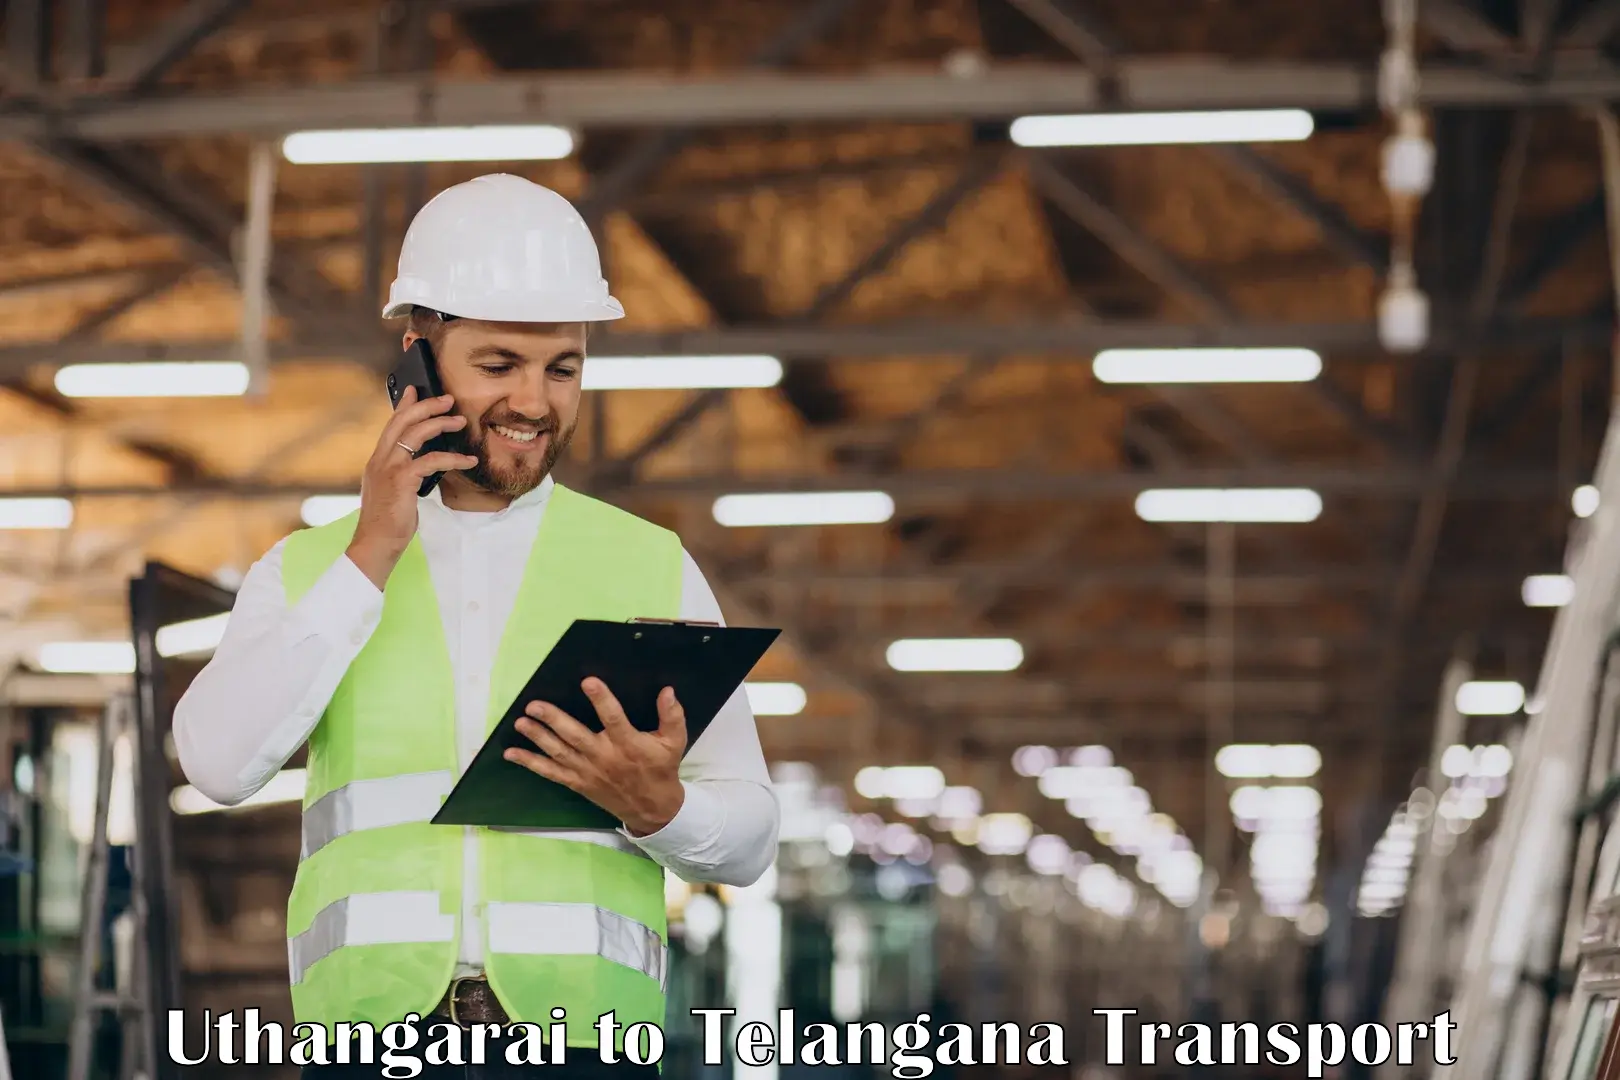 Truck transport companies in India Uthangarai to Bejjanki